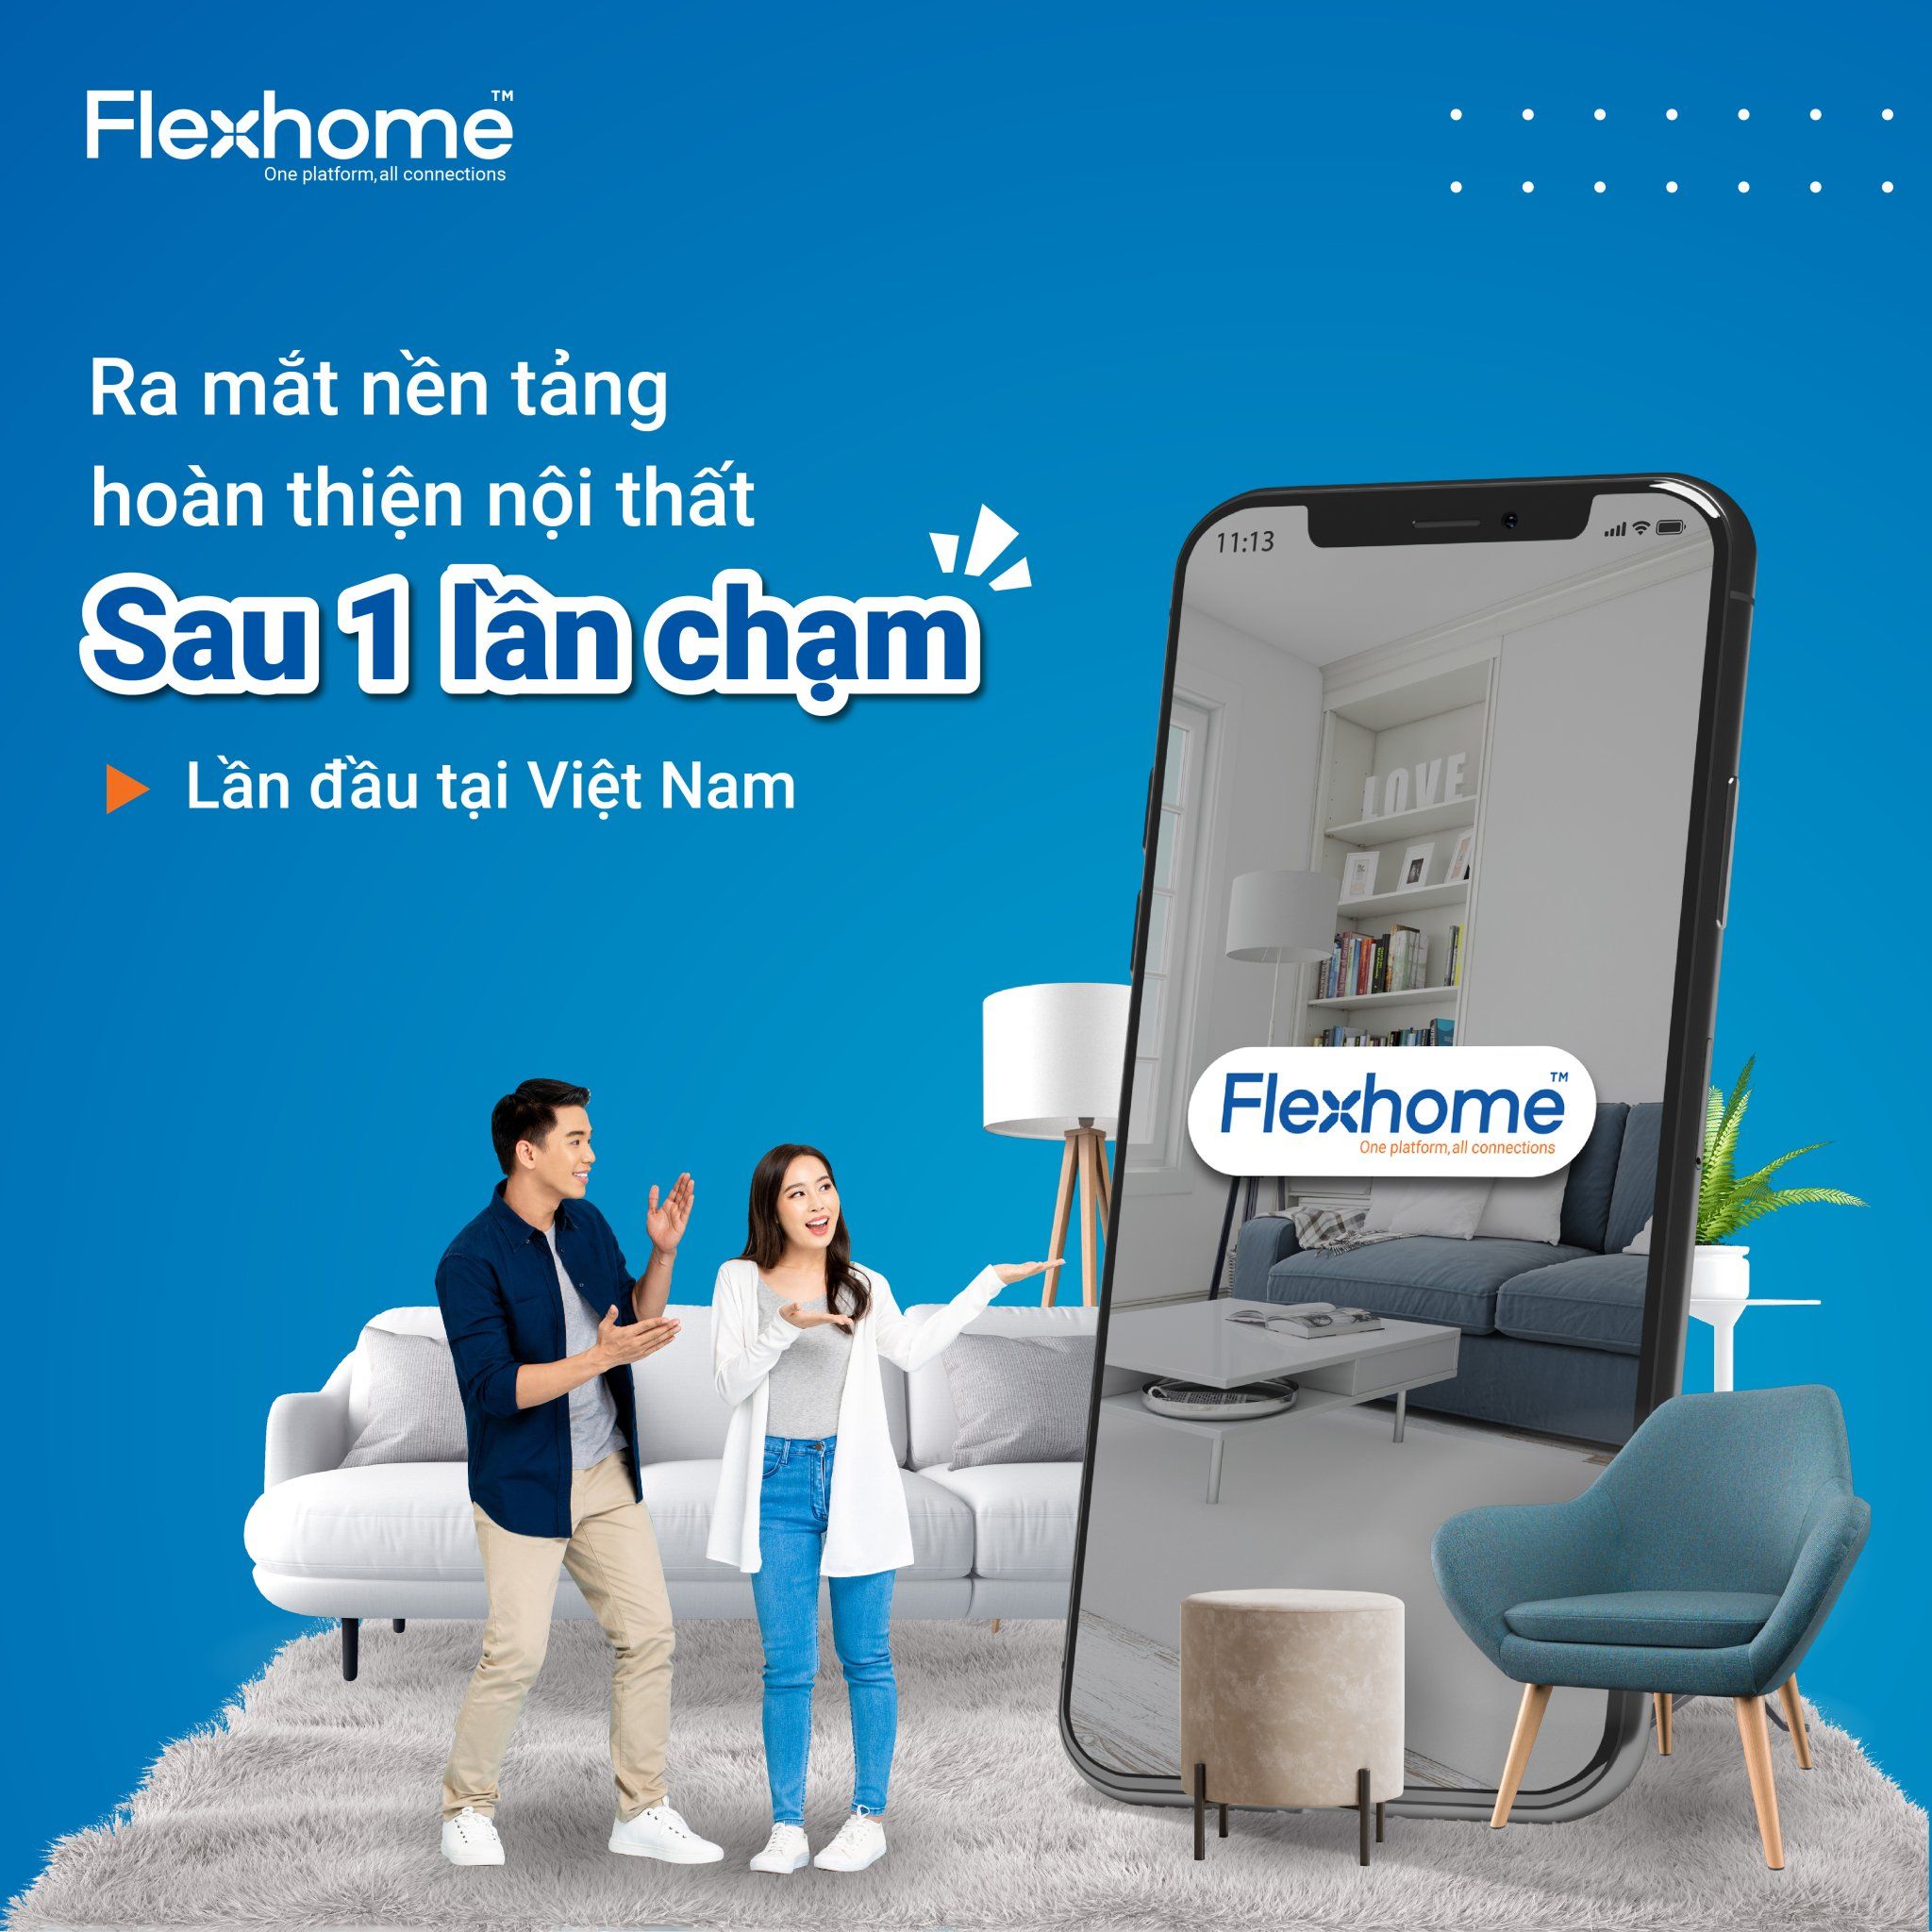 Flexhome - Nền tảng nội thất số đầu tiên tại Việt Nam